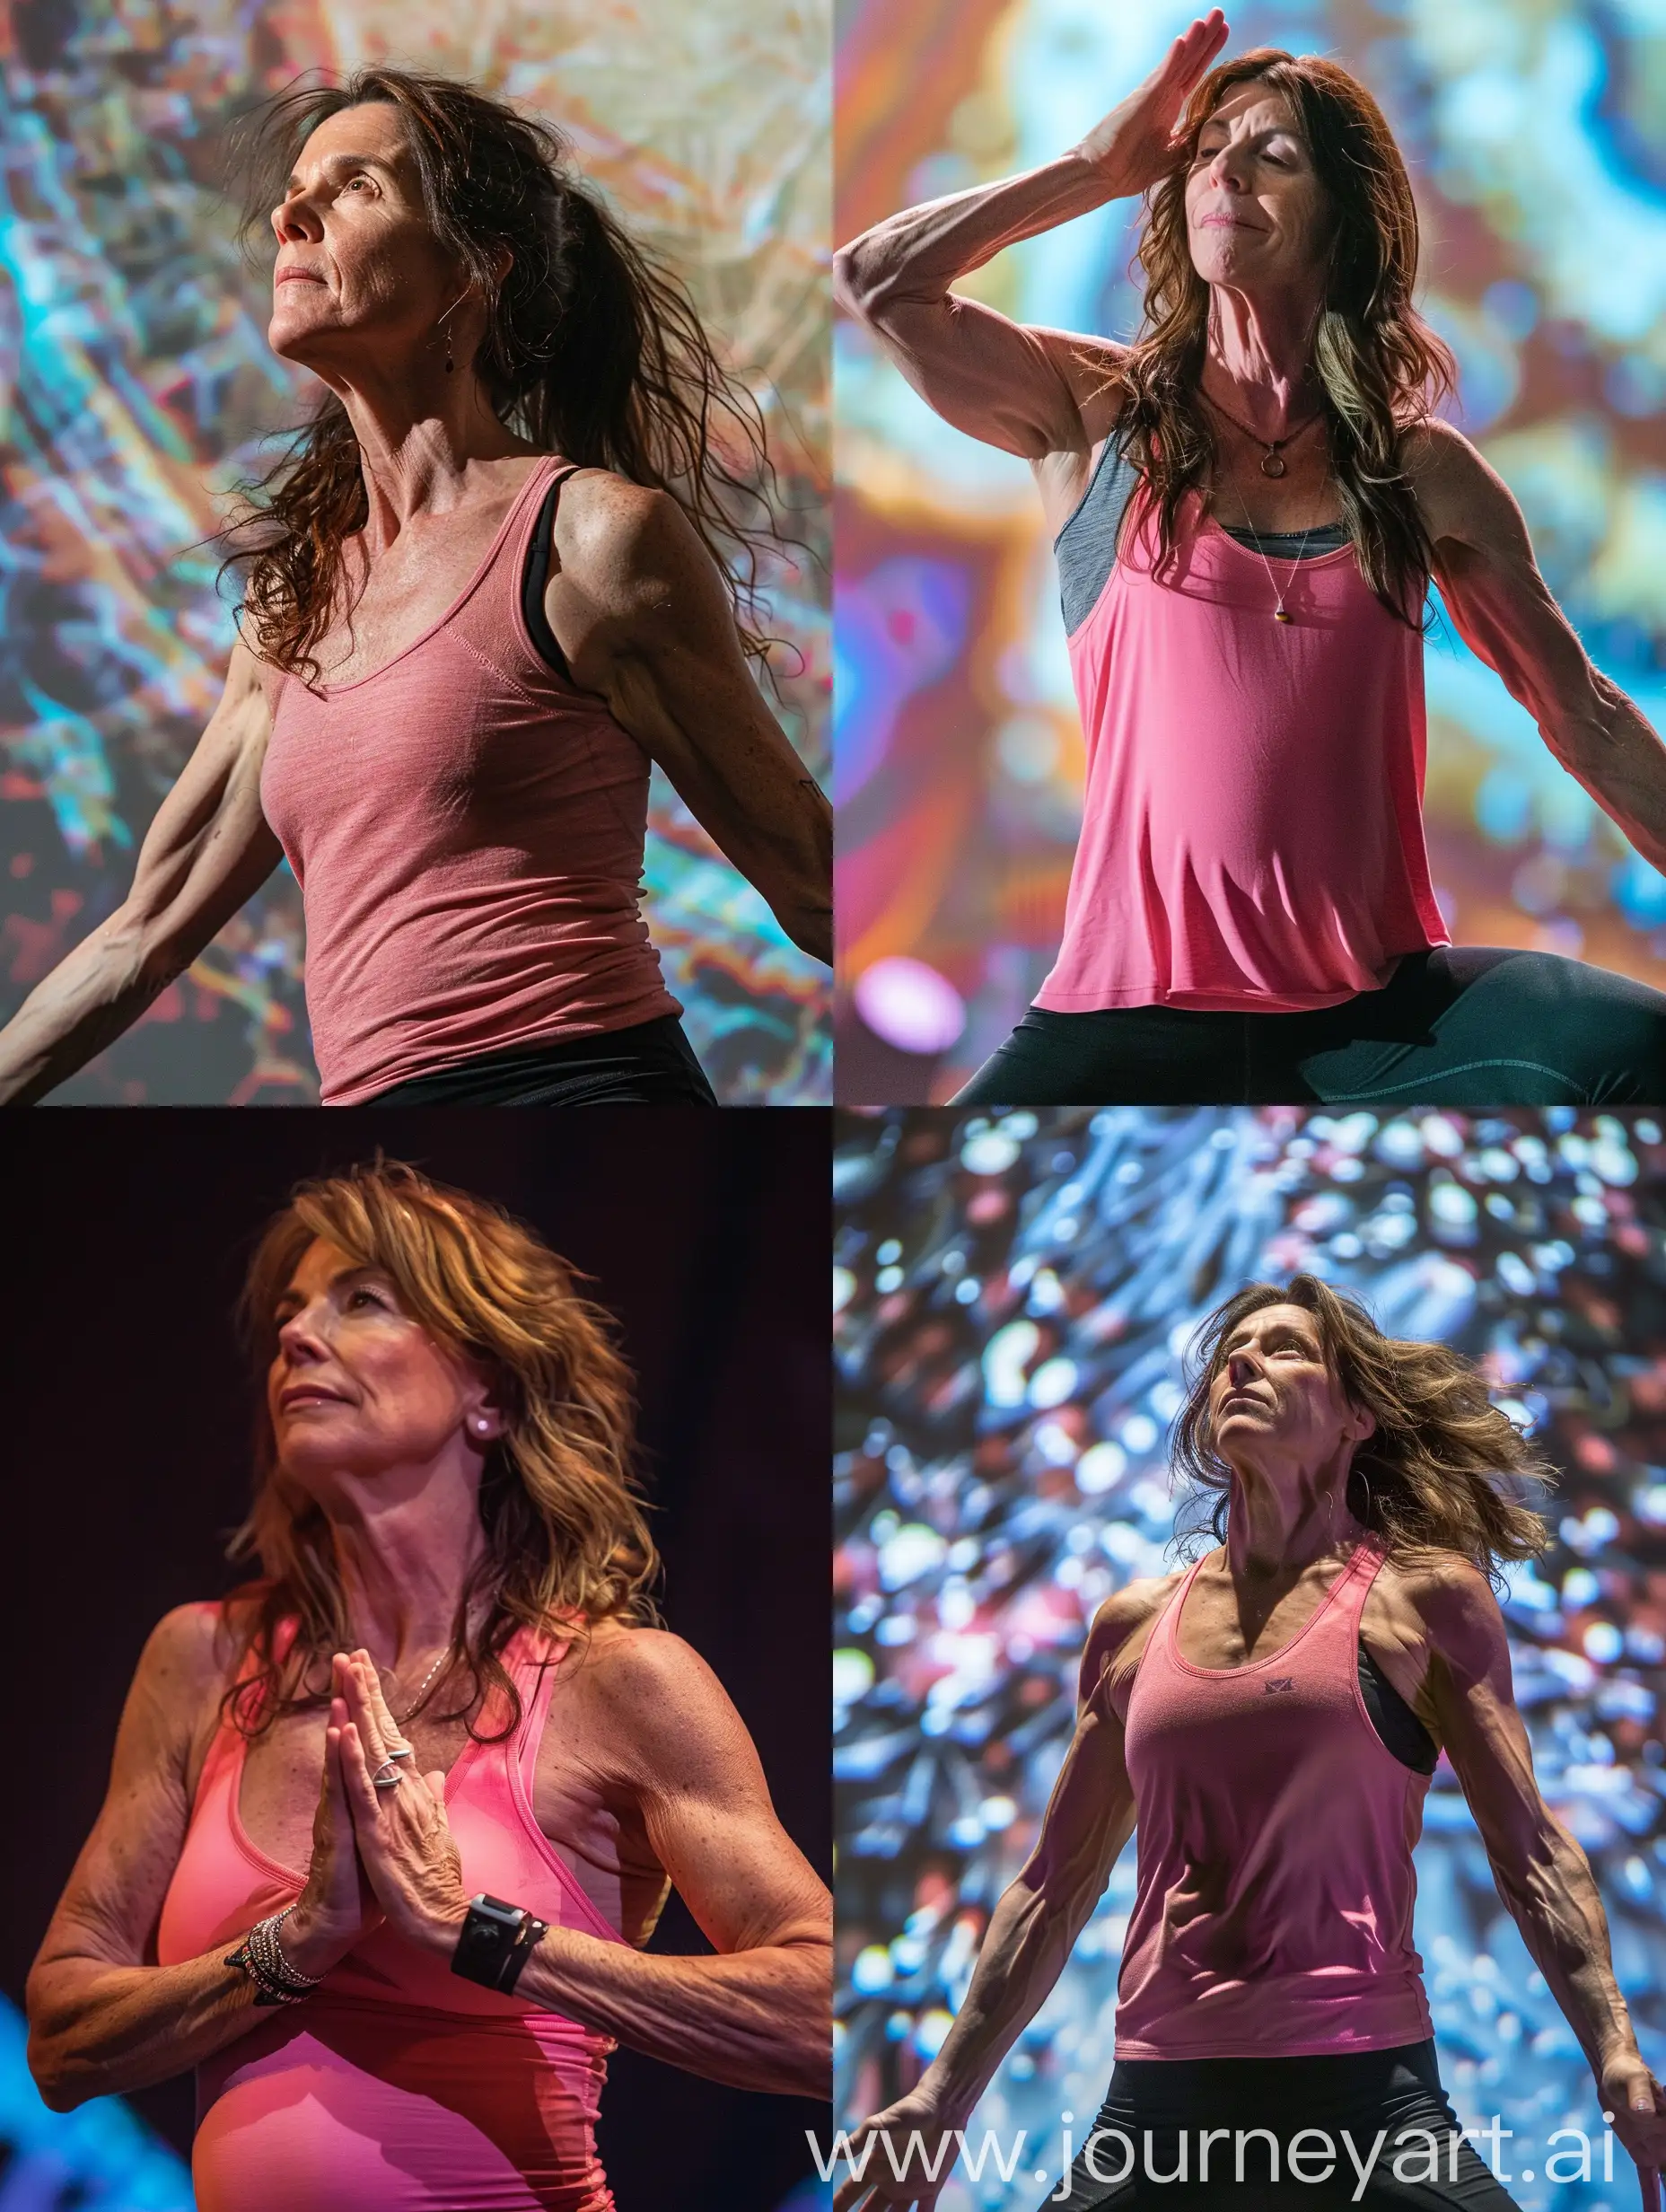 Laura-Branigan-Performing-Energetic-Yoga-in-Pink-Tank-Top-and-Black-Leggings-Onstage